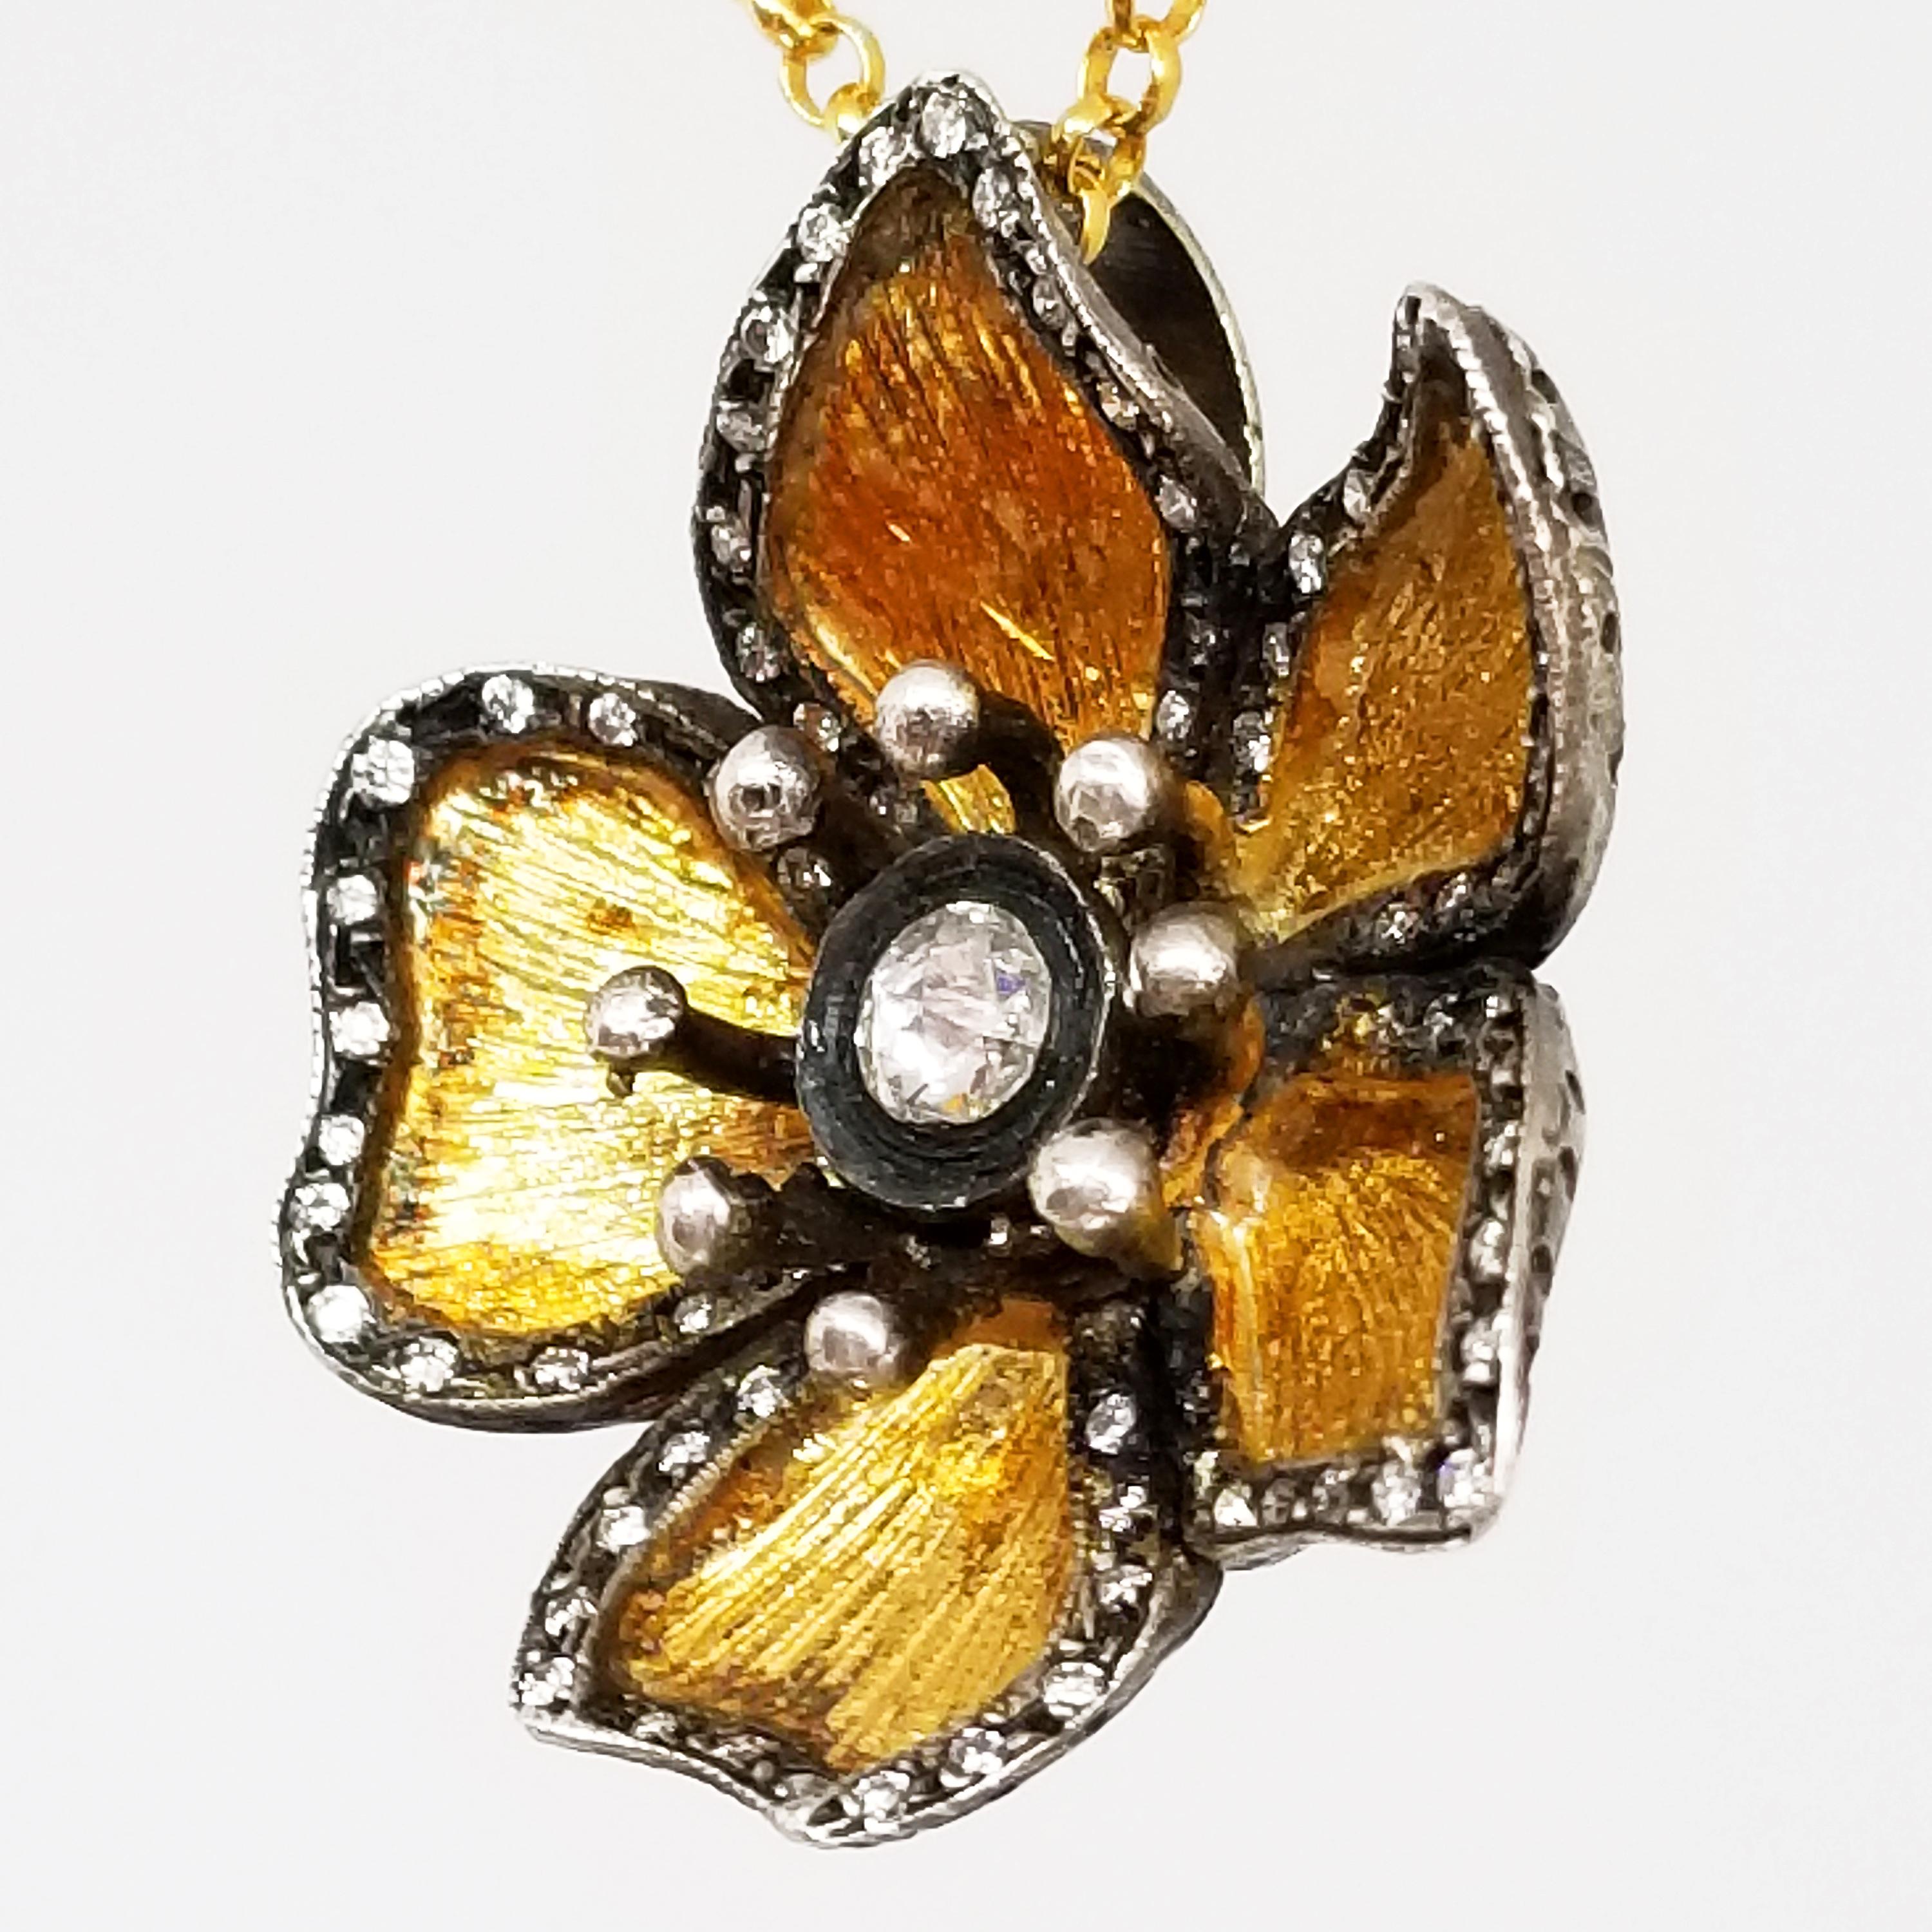 Un collier, un pendentif et une chaîne entièrement fabriqués à la main,  fabriqués en Turquie par l'équipe mari et femme de Kurtulan, Naci et Meltem. Le pendentif fleur est une pièce maîtresse pour tous ceux qui le portent. La fleur à cinq pétales